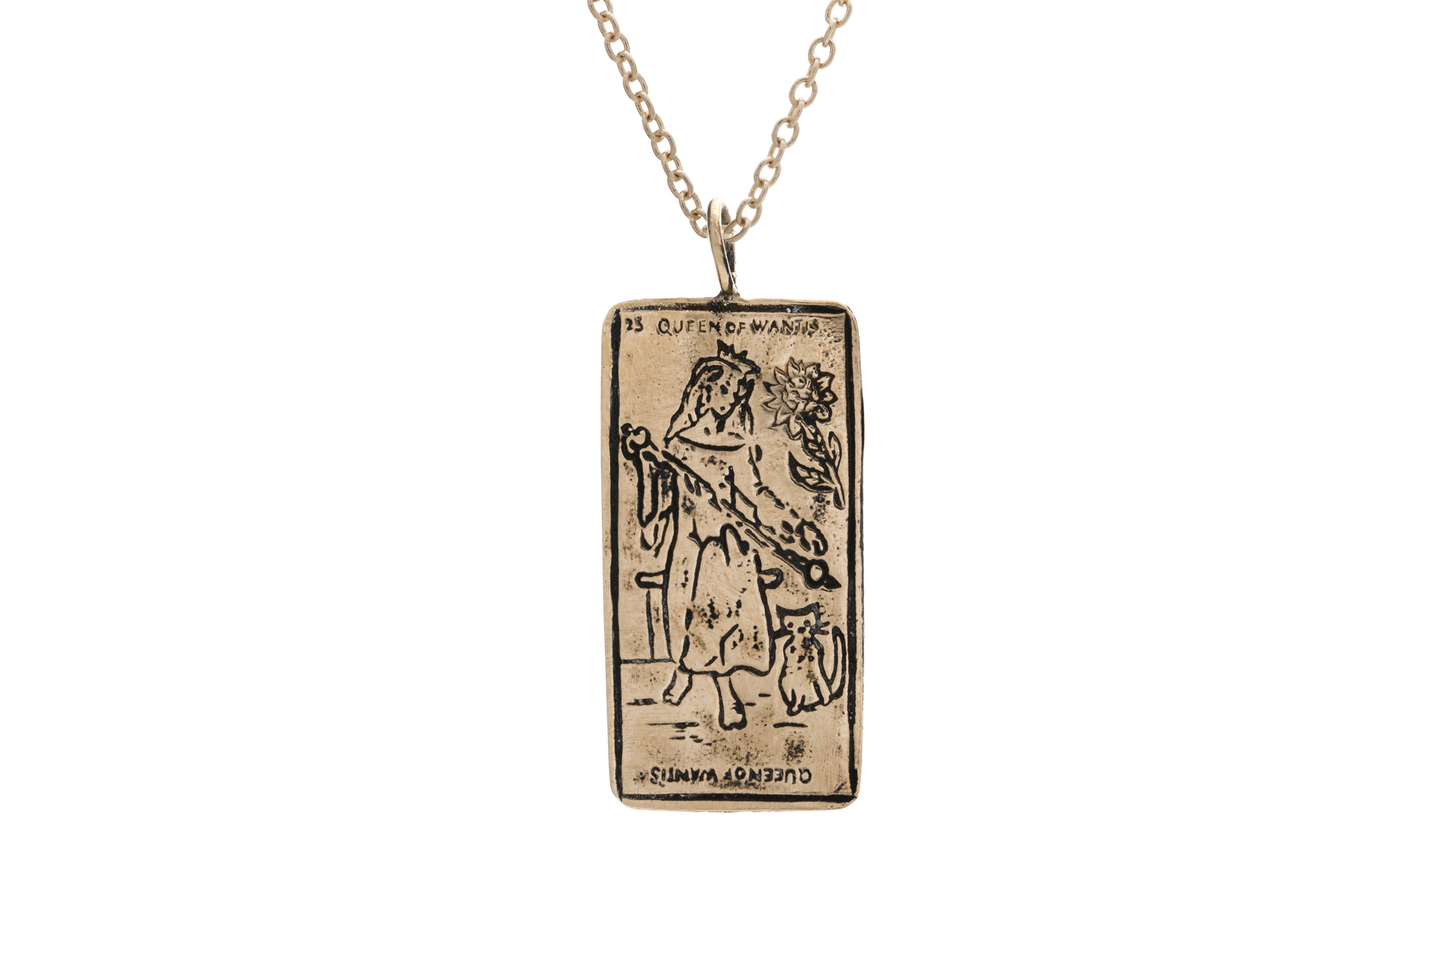 Queen of Wands Tarot Card Necklace